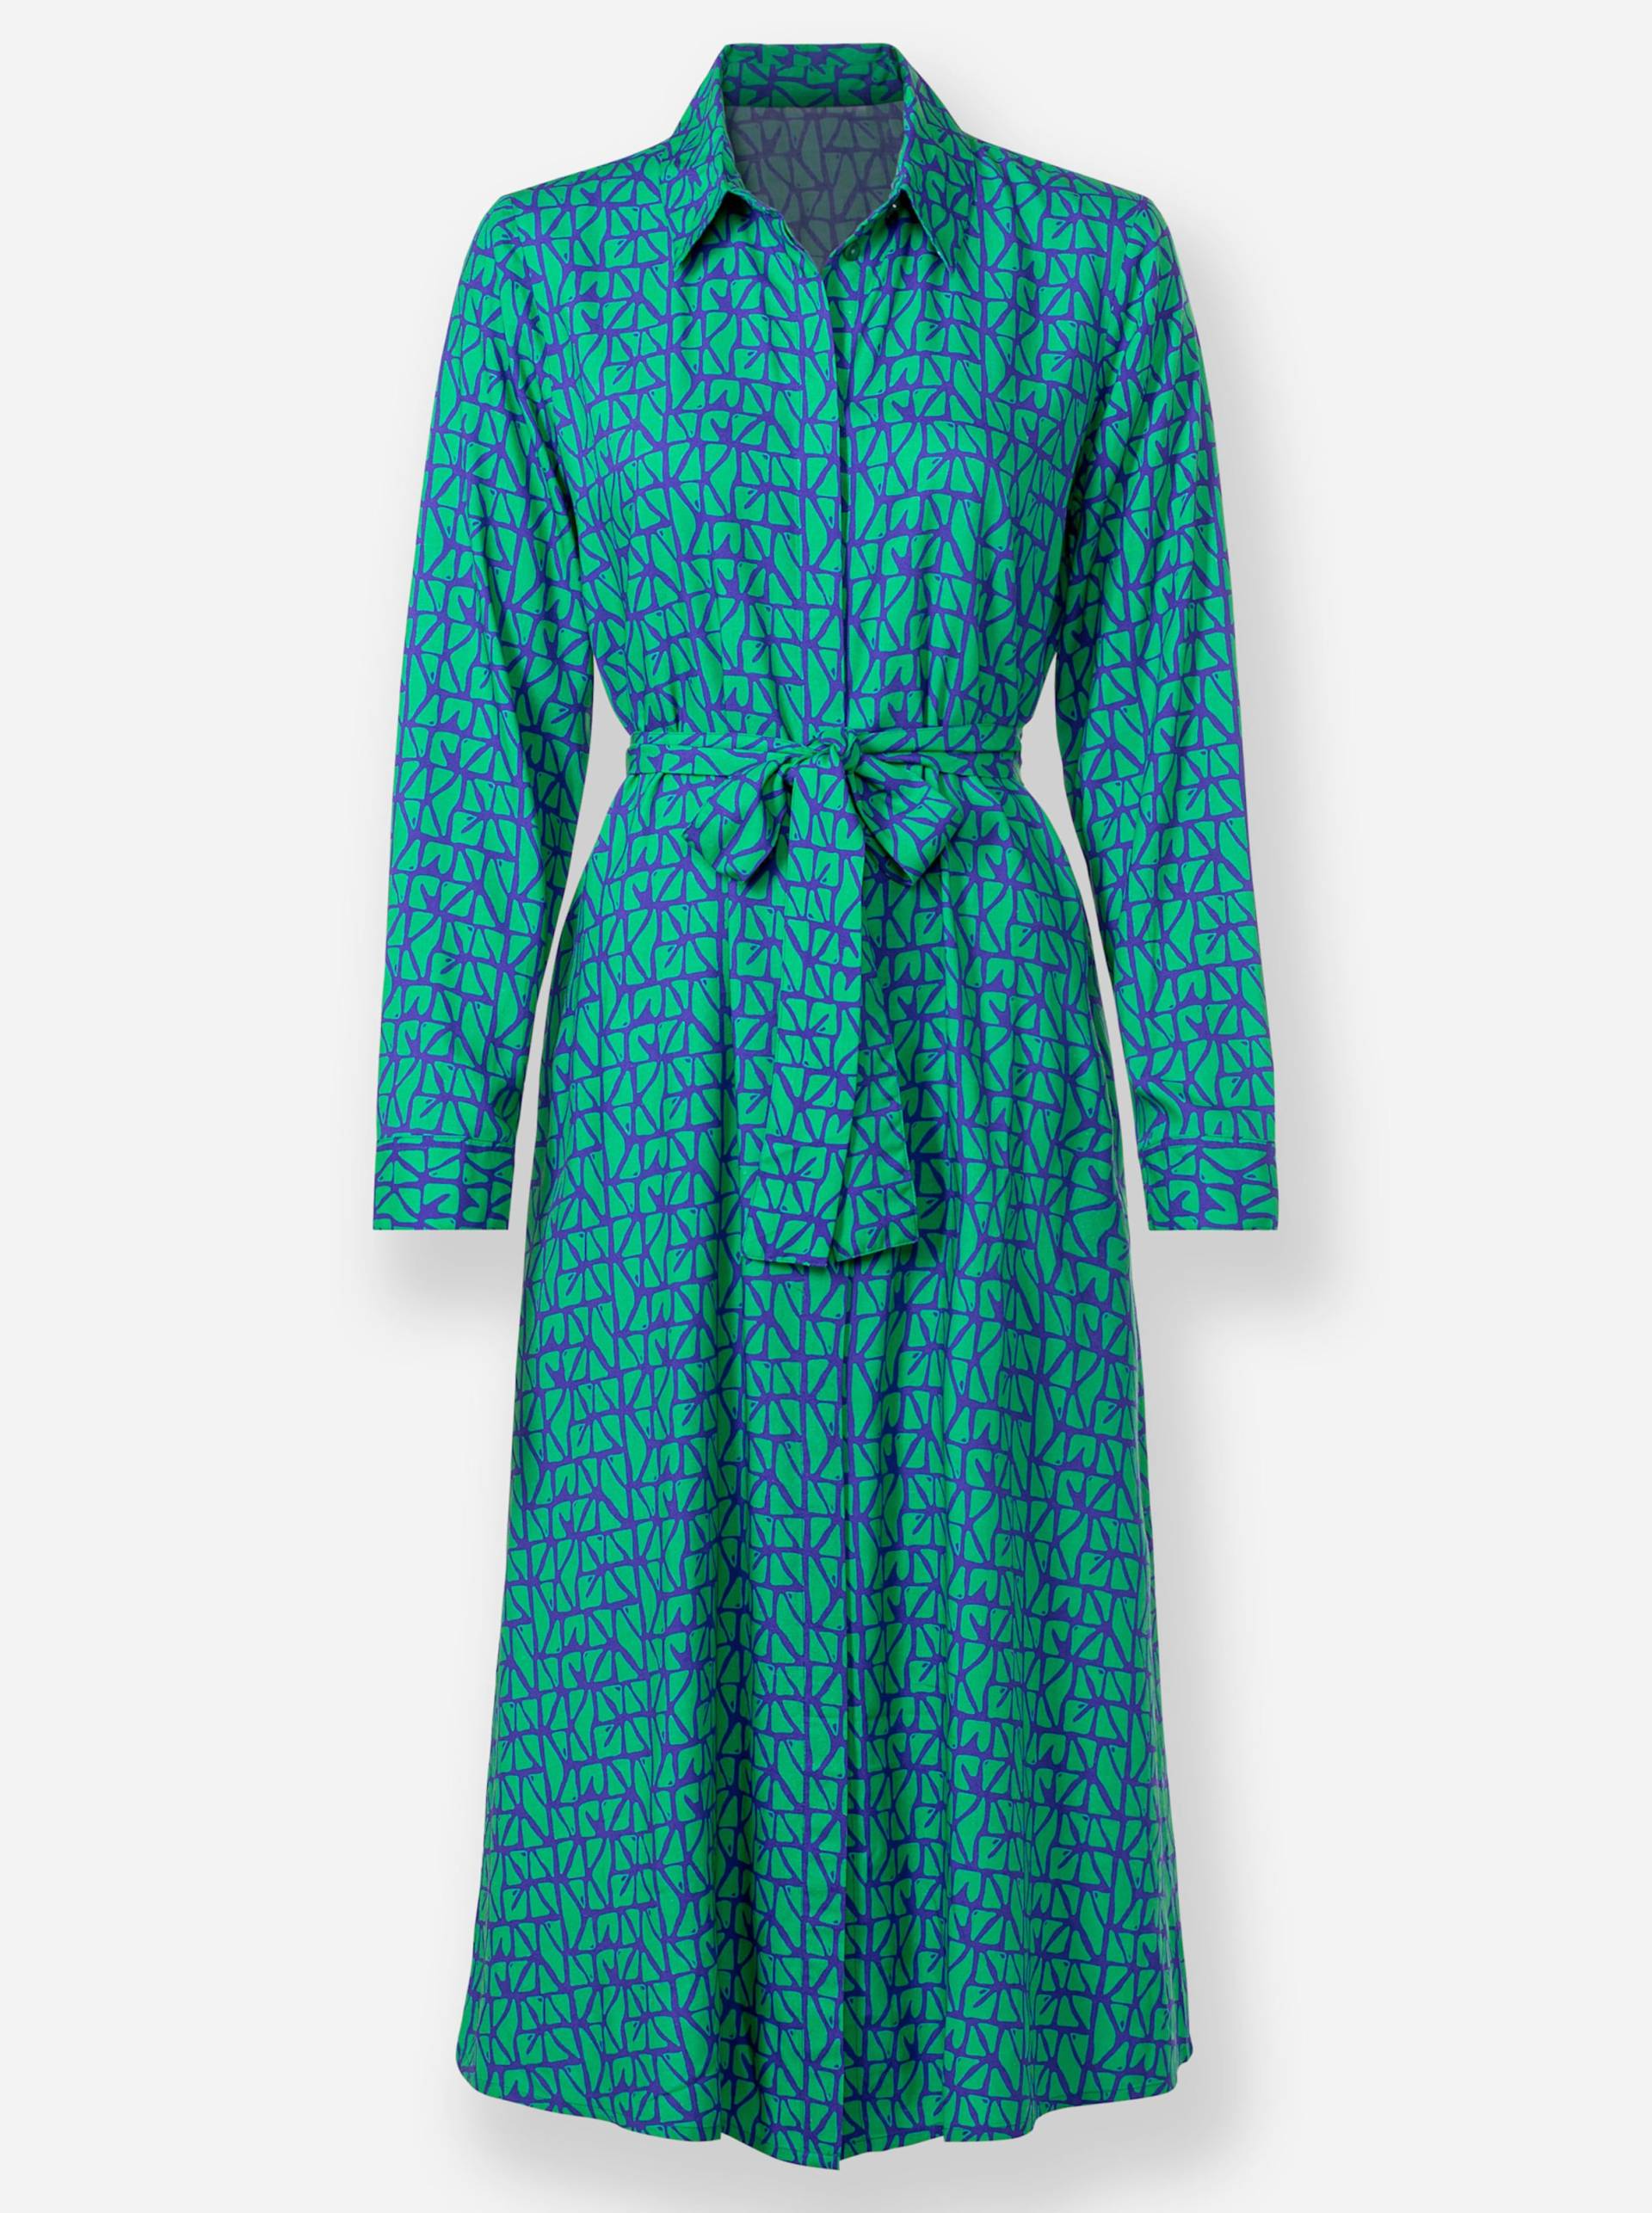 Druck-Kleid in grasgrün-royalblau-bedruckt von heine